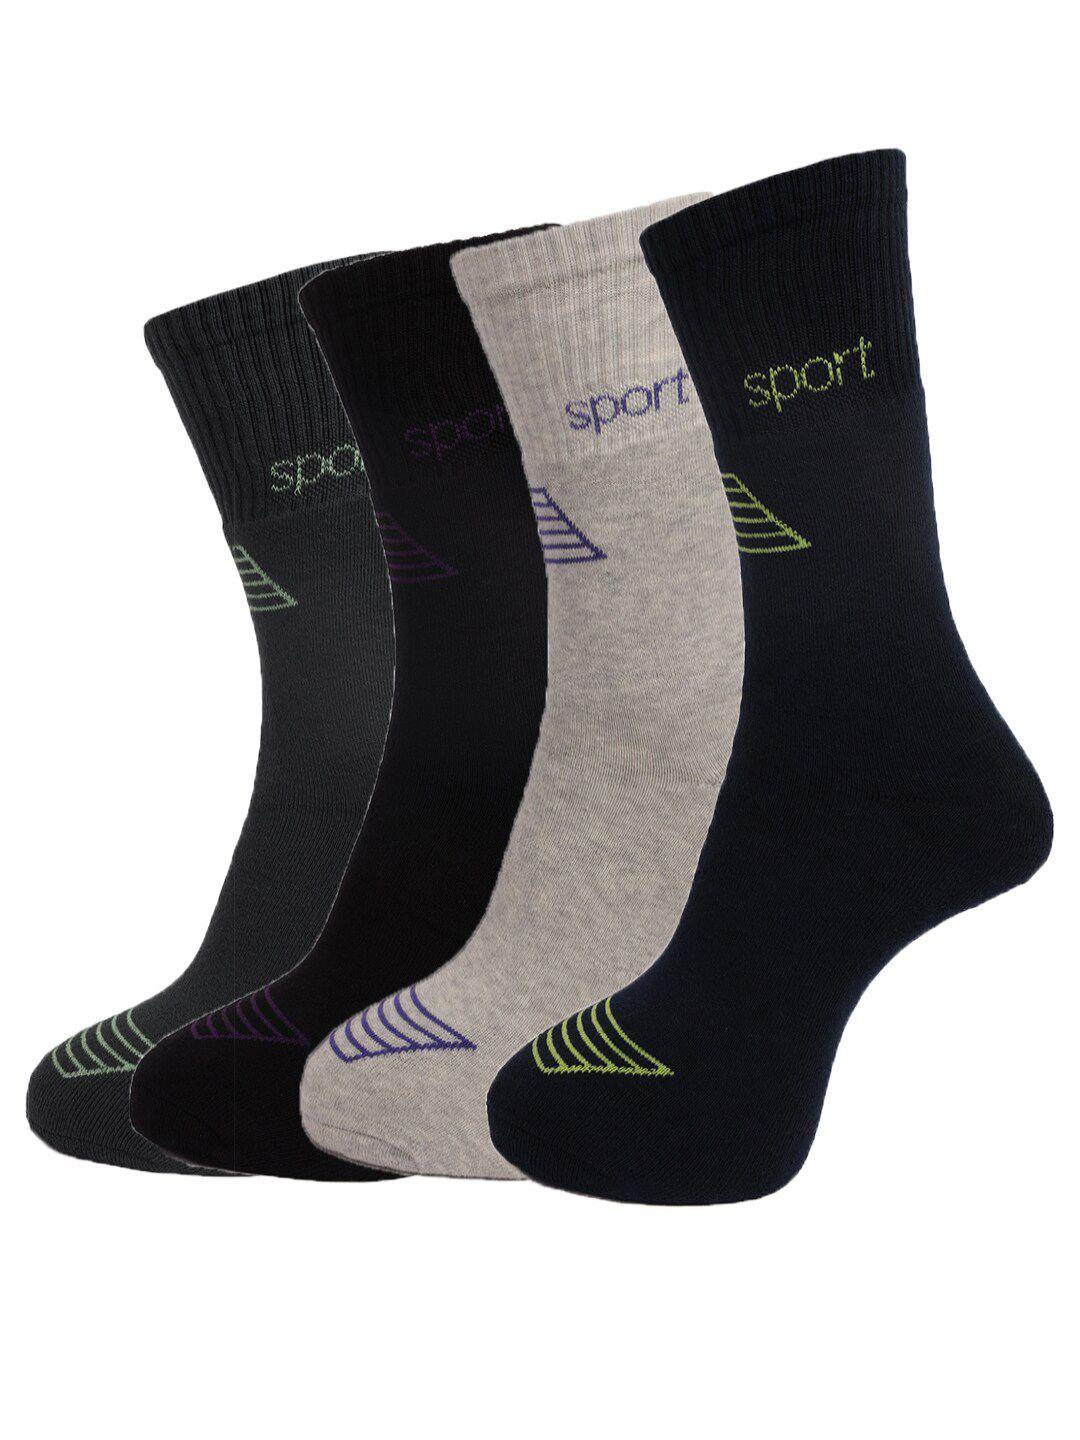 dollar-socks-men-pack-of-4-assorted-cotton-above-ankle-length-socks